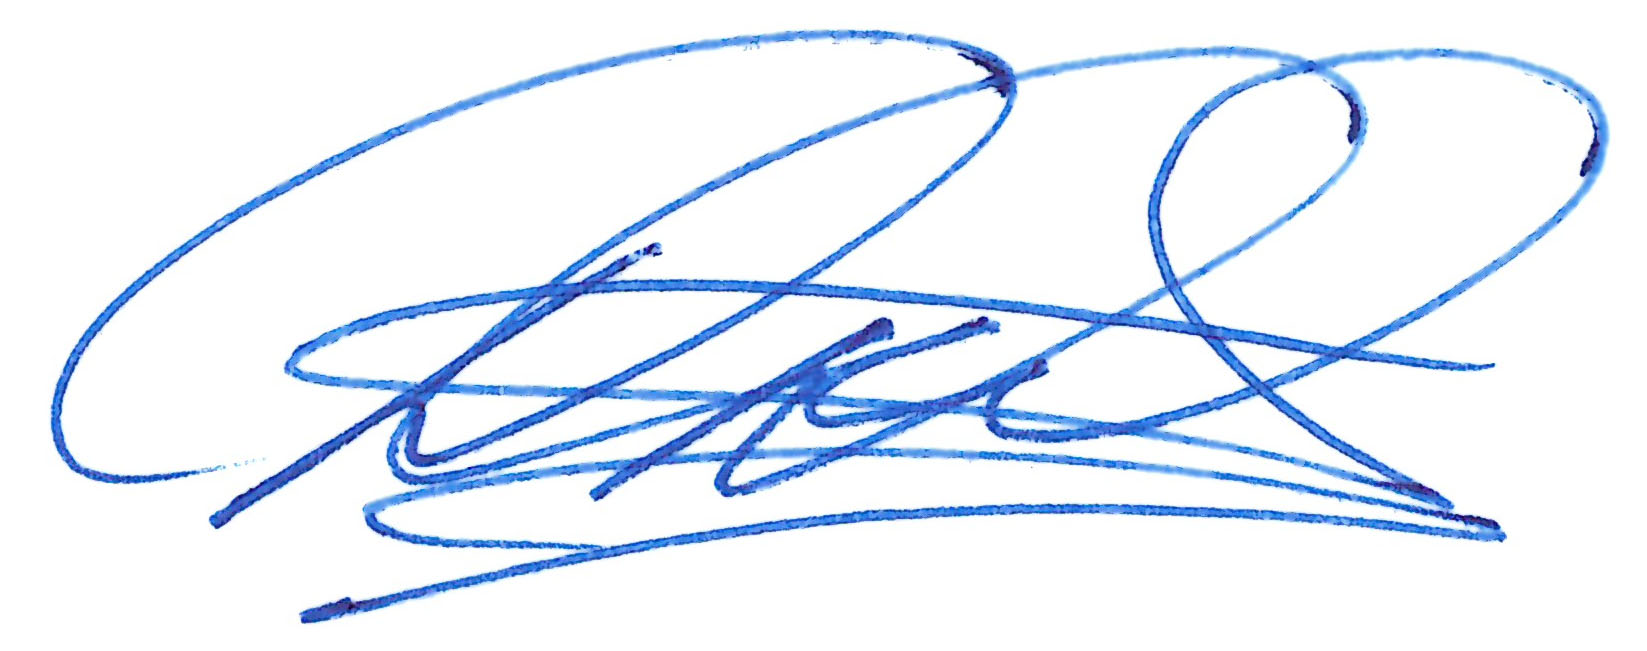 dd signature